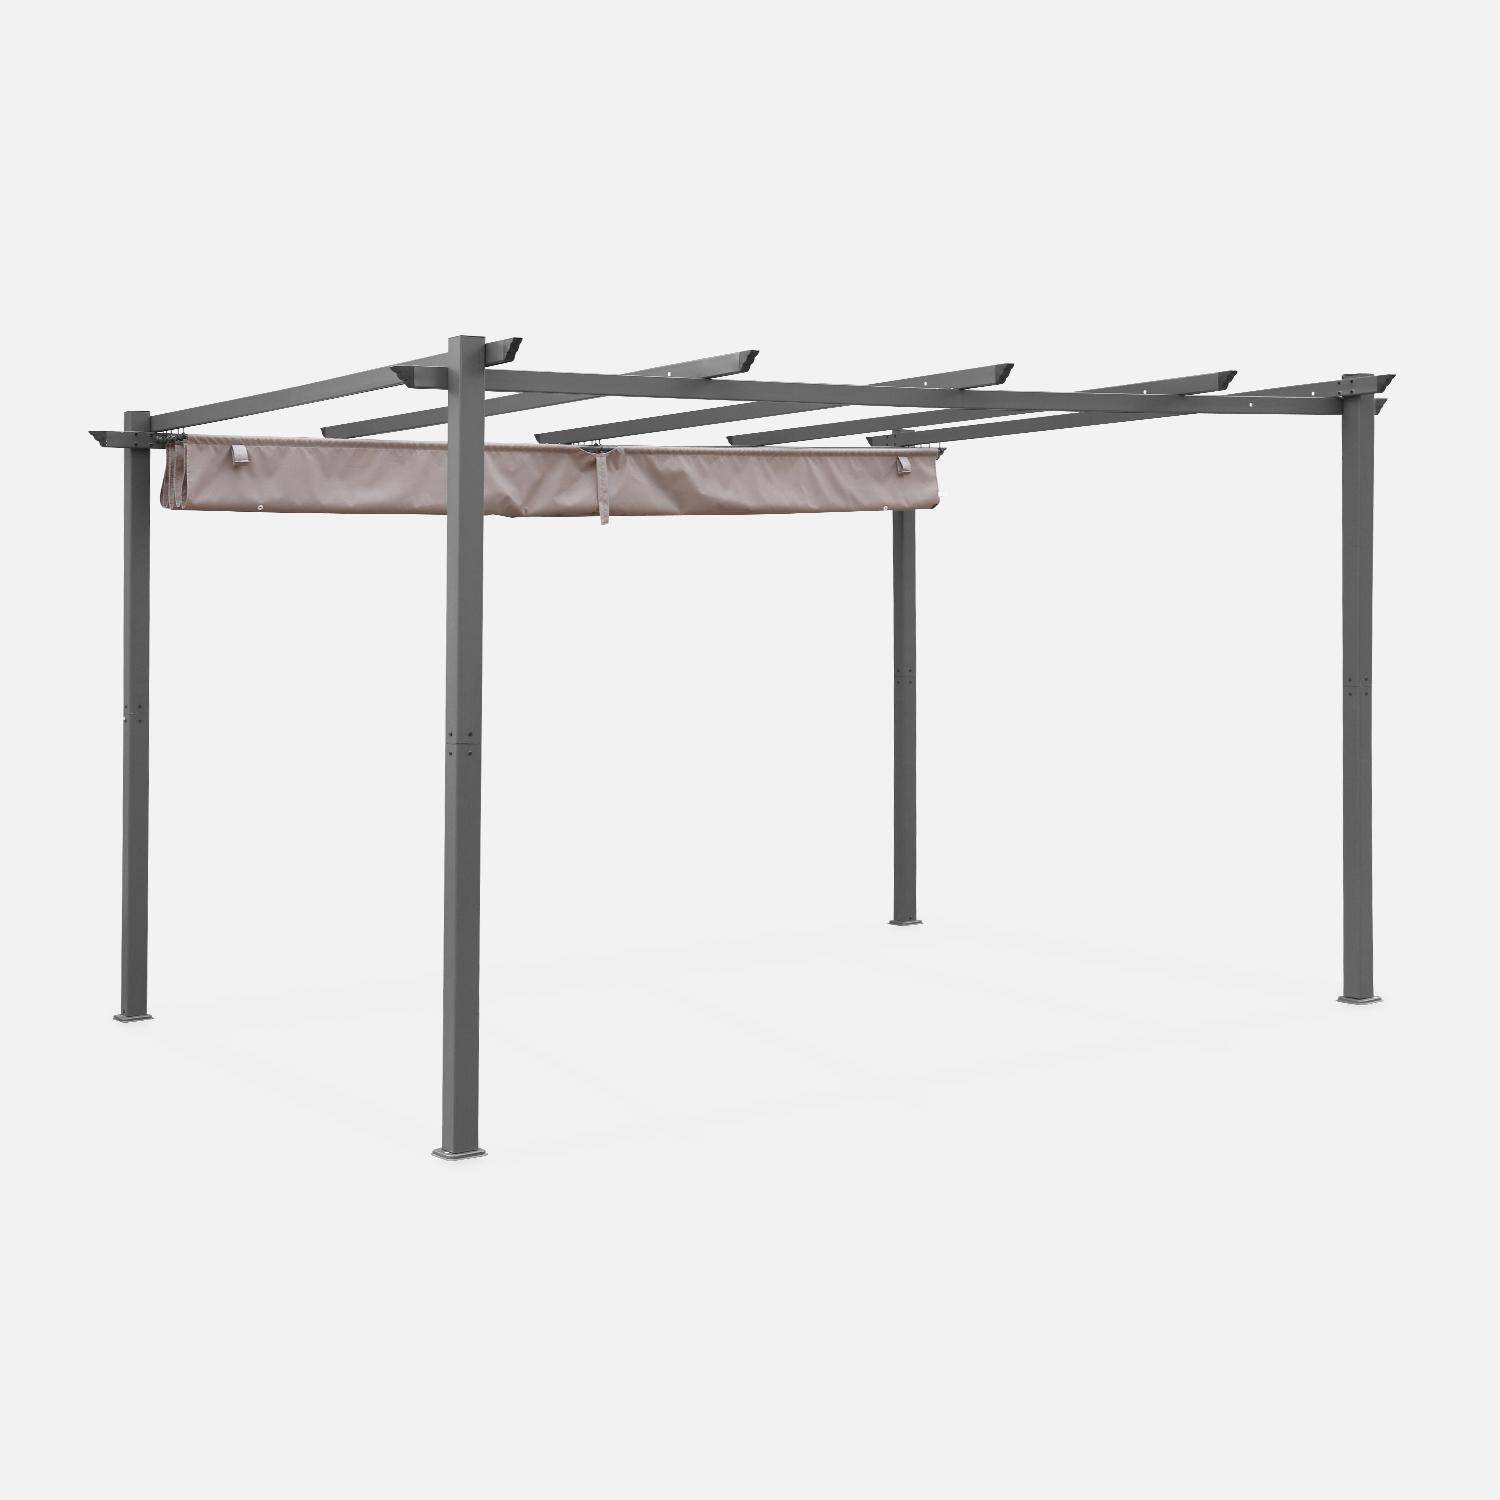 Pergola in alluminio - Isla 3x4m - Telo bruno/talpa - Pergola ideale per la vostra terrazza, tetto retrattile, telo scorrevole, struttura in alluminio Photo3